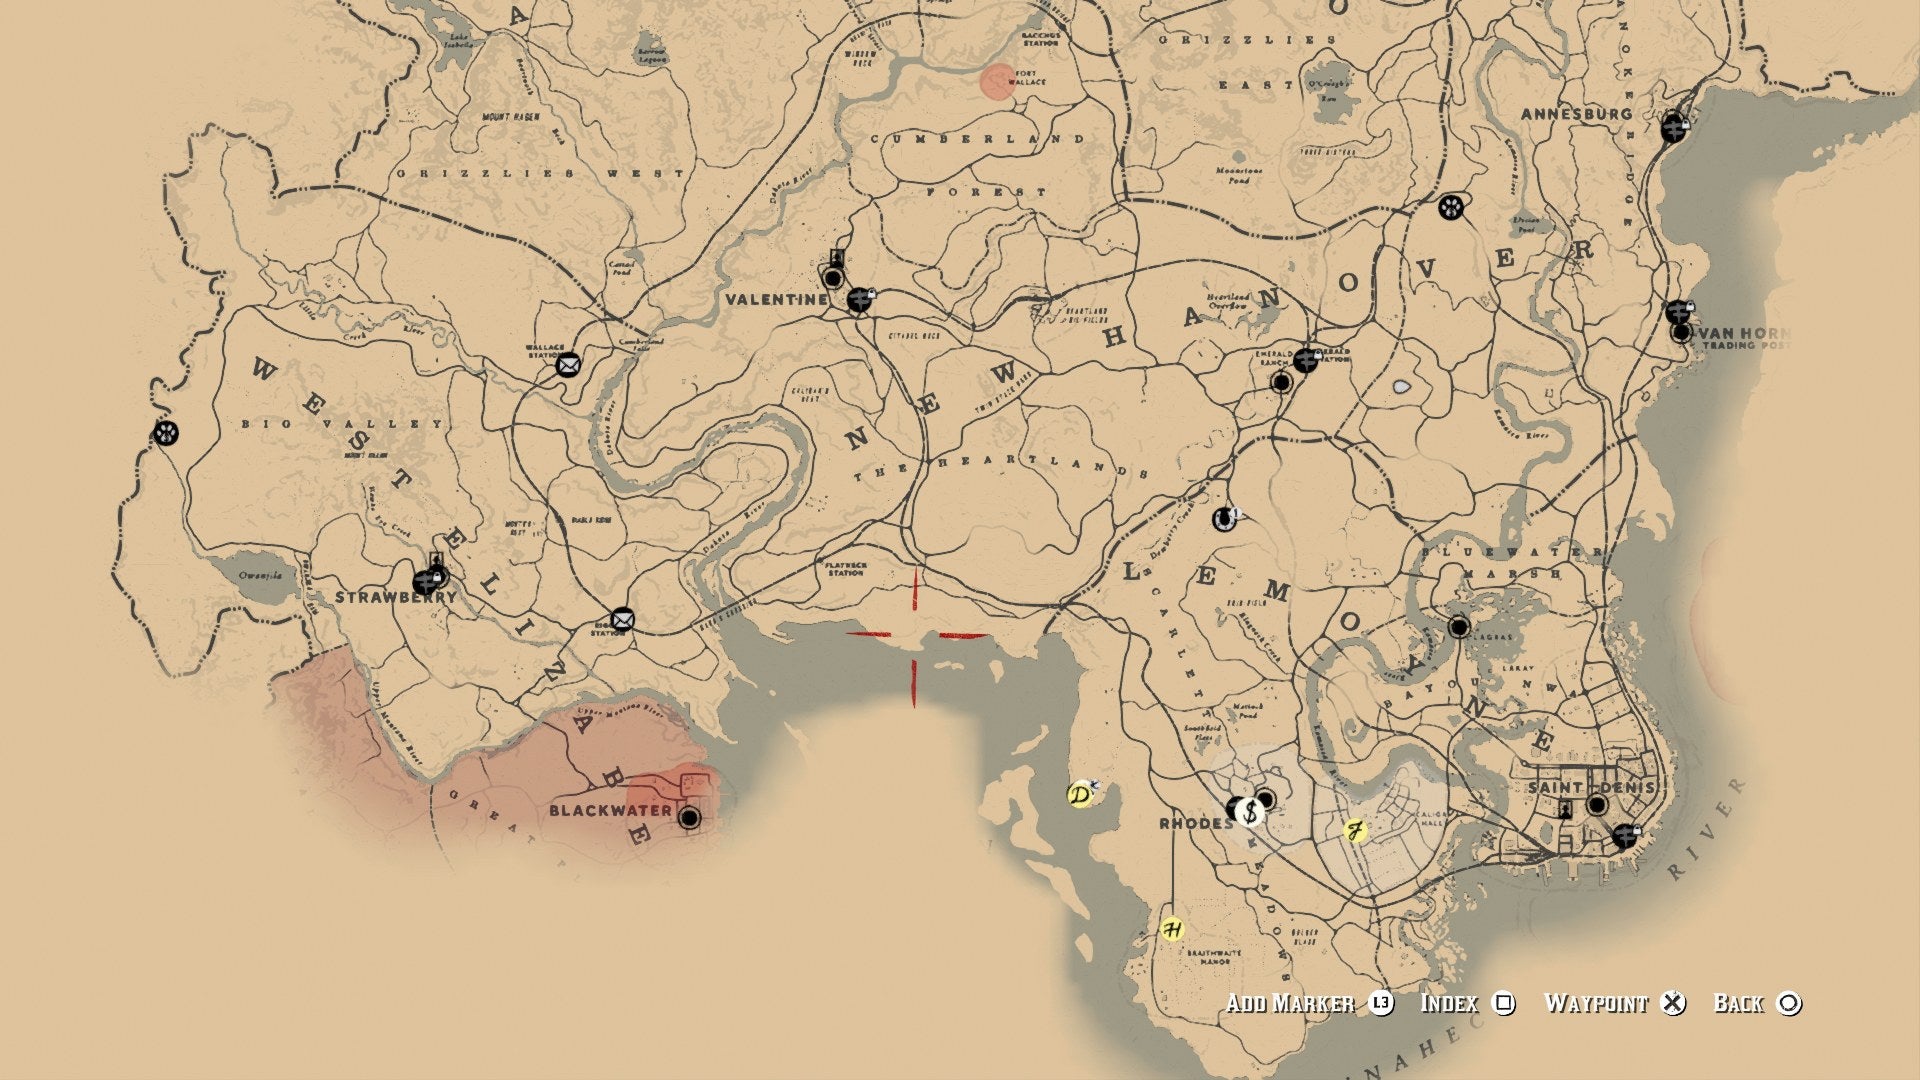 hund udendørs Er deprimeret Red Dead Redemption 2: How to Unlock the Whole Map | VG247